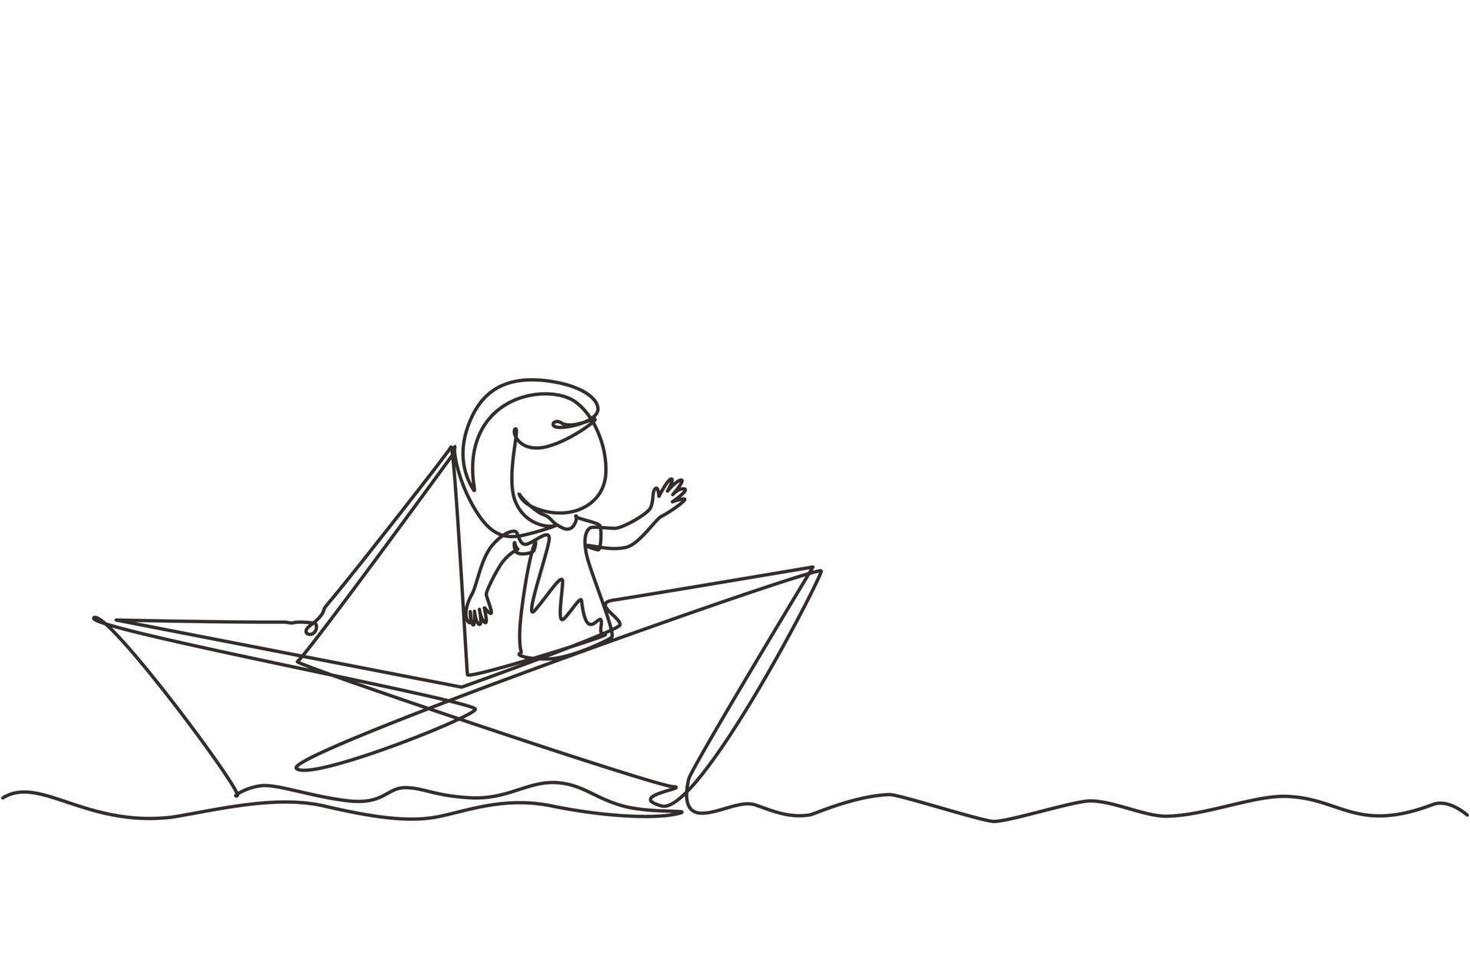 une seule ligne continue dessinant une jolie petite fille souriante naviguant sur un bateau en papier. heureux enfant souriant s'amusant et jouant au marin dans un monde imaginaire. une ligne dessiner illustration vectorielle de conception graphique vecteur